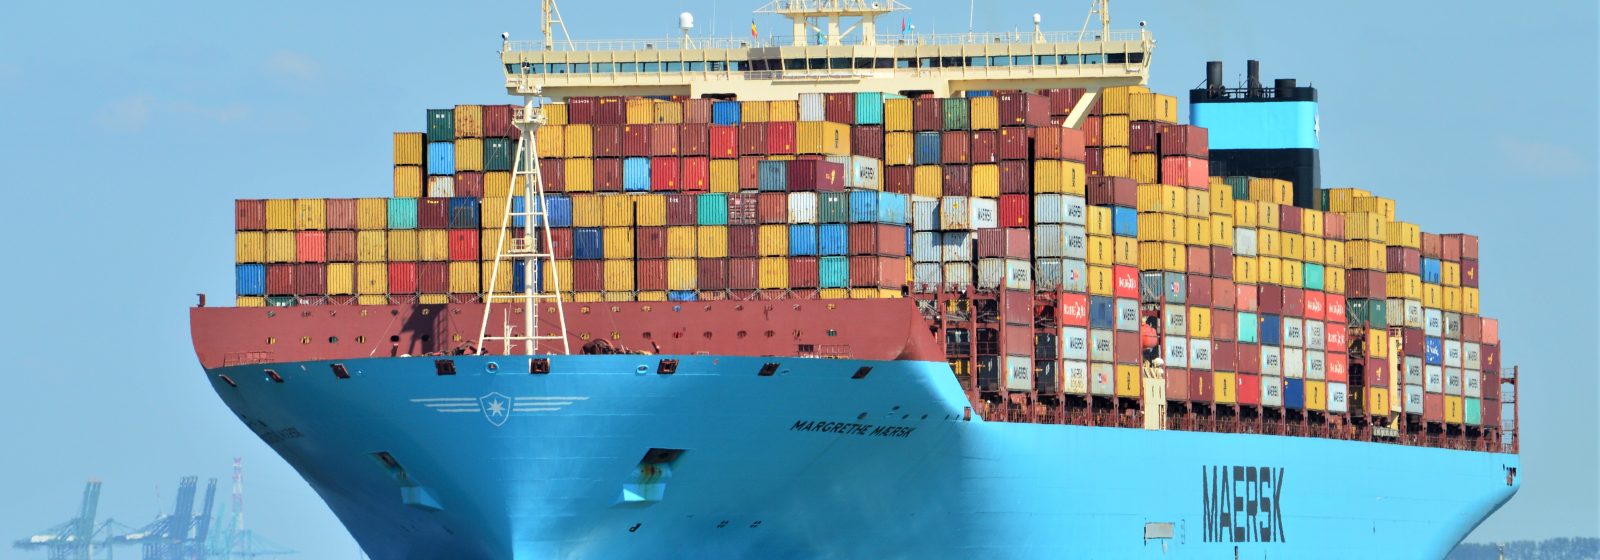 De 'Margrethe Maersk' bij afvaart van de Westerschelde na een Antwerpse call size van meer dan 10.000 containers